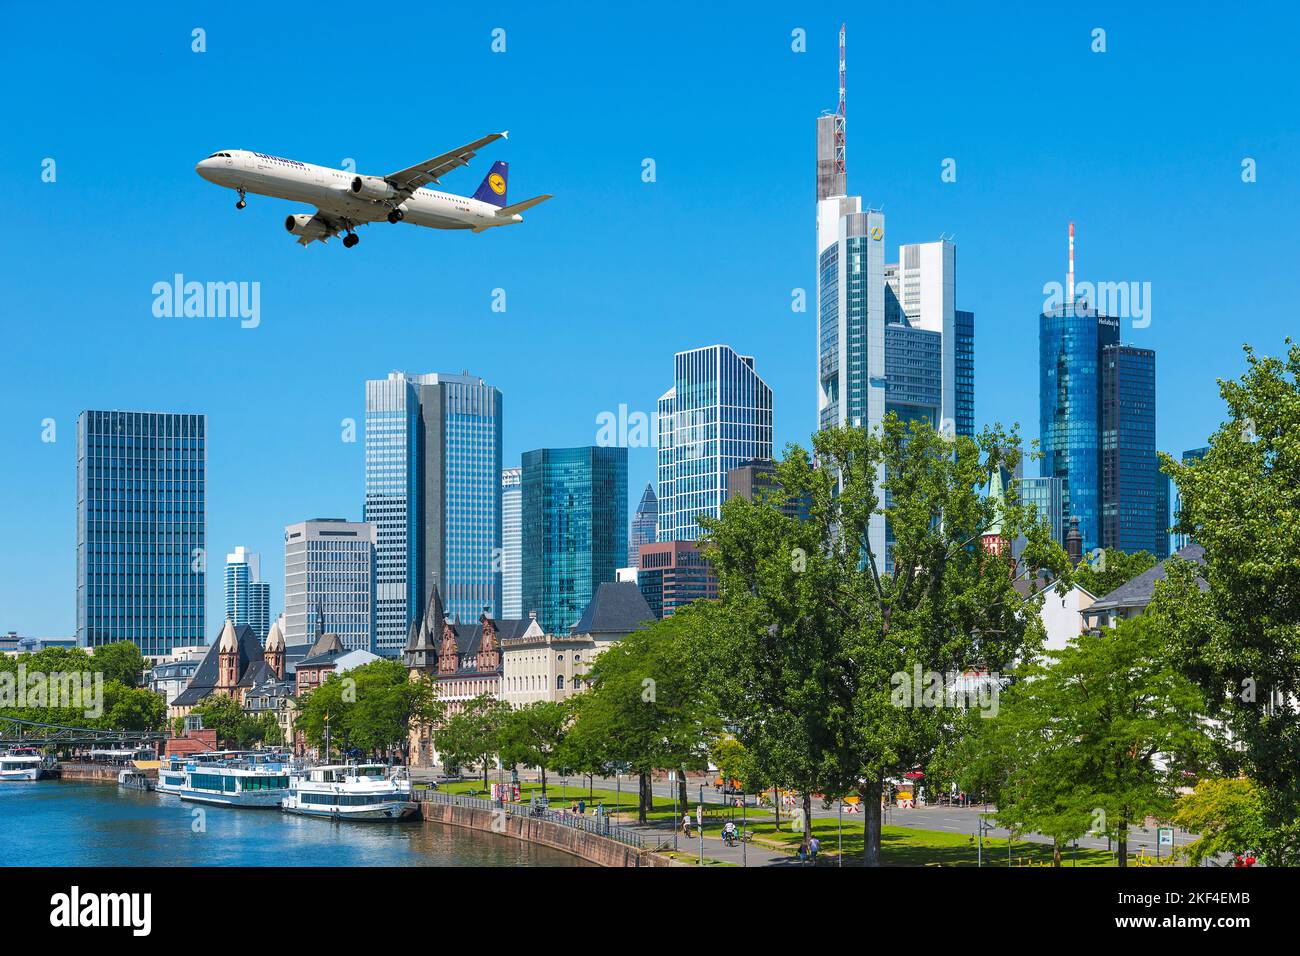 Die Skyline von Frankfurt am Main im Sommer, Flugzeug, Lufthansa, Airbus A310-100, Überflug, Stock Photo